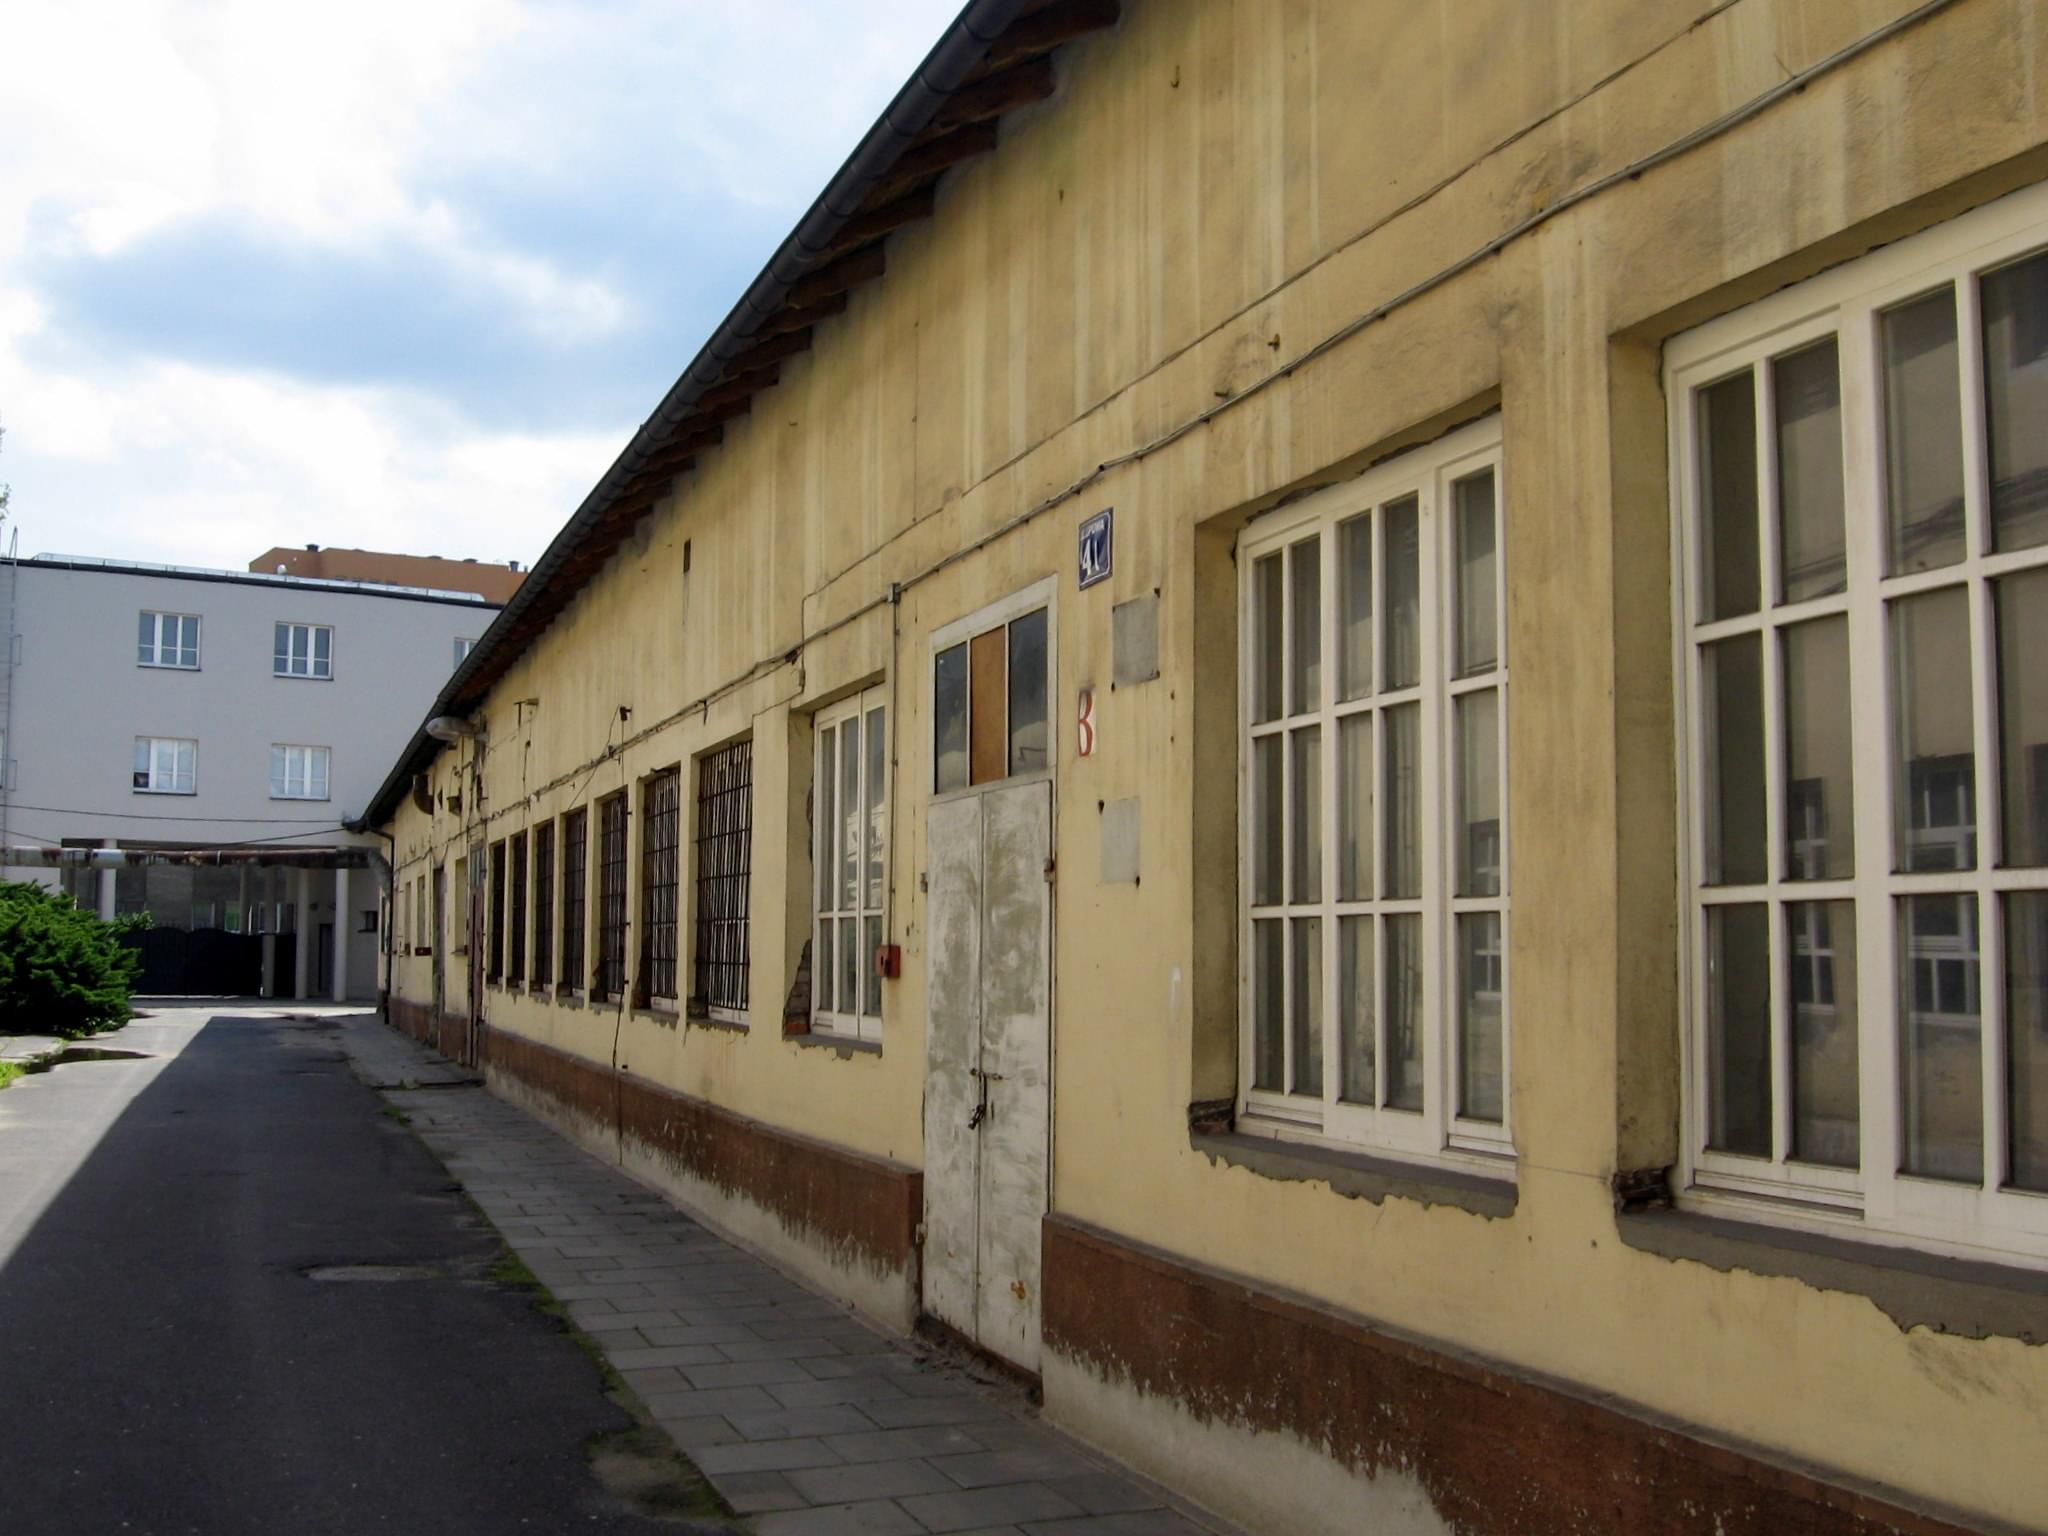 Oskar Schindler's Enamel Factory